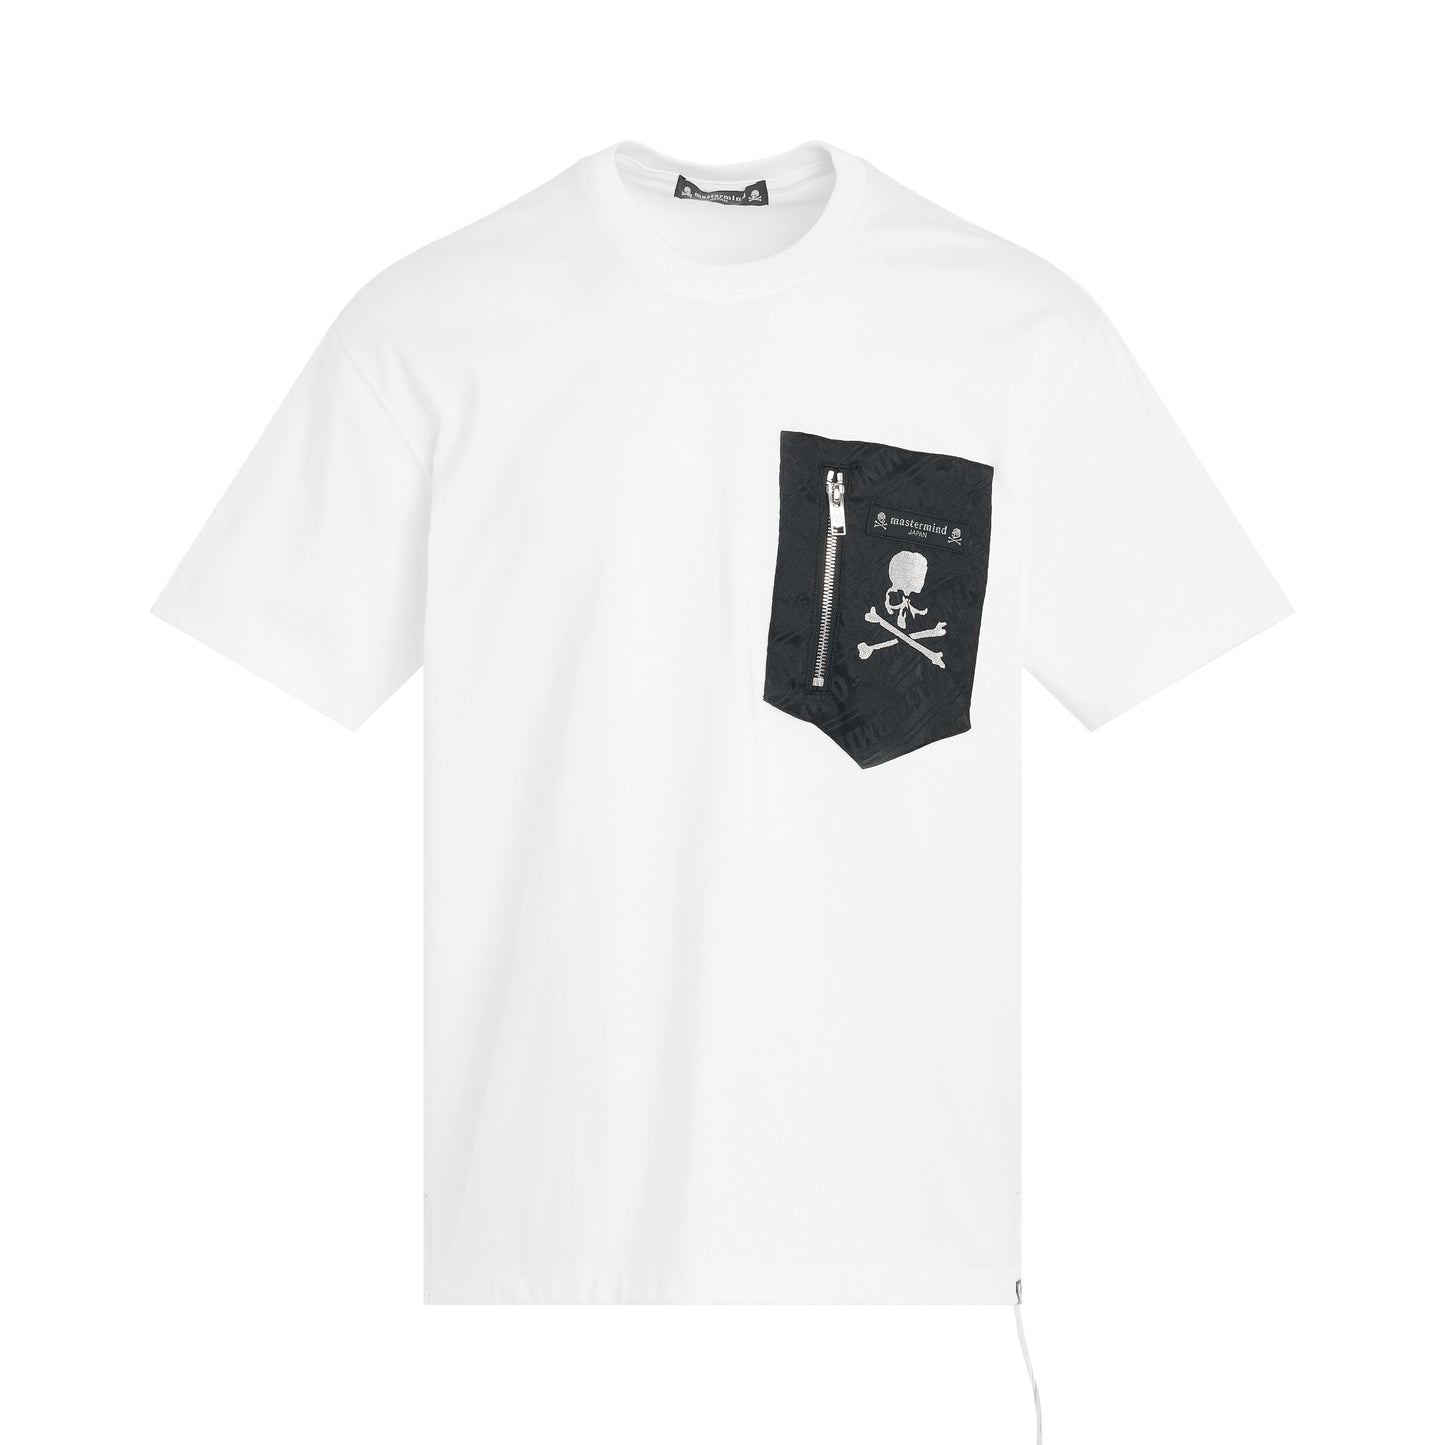 Pocket T-Shirt in White/Black